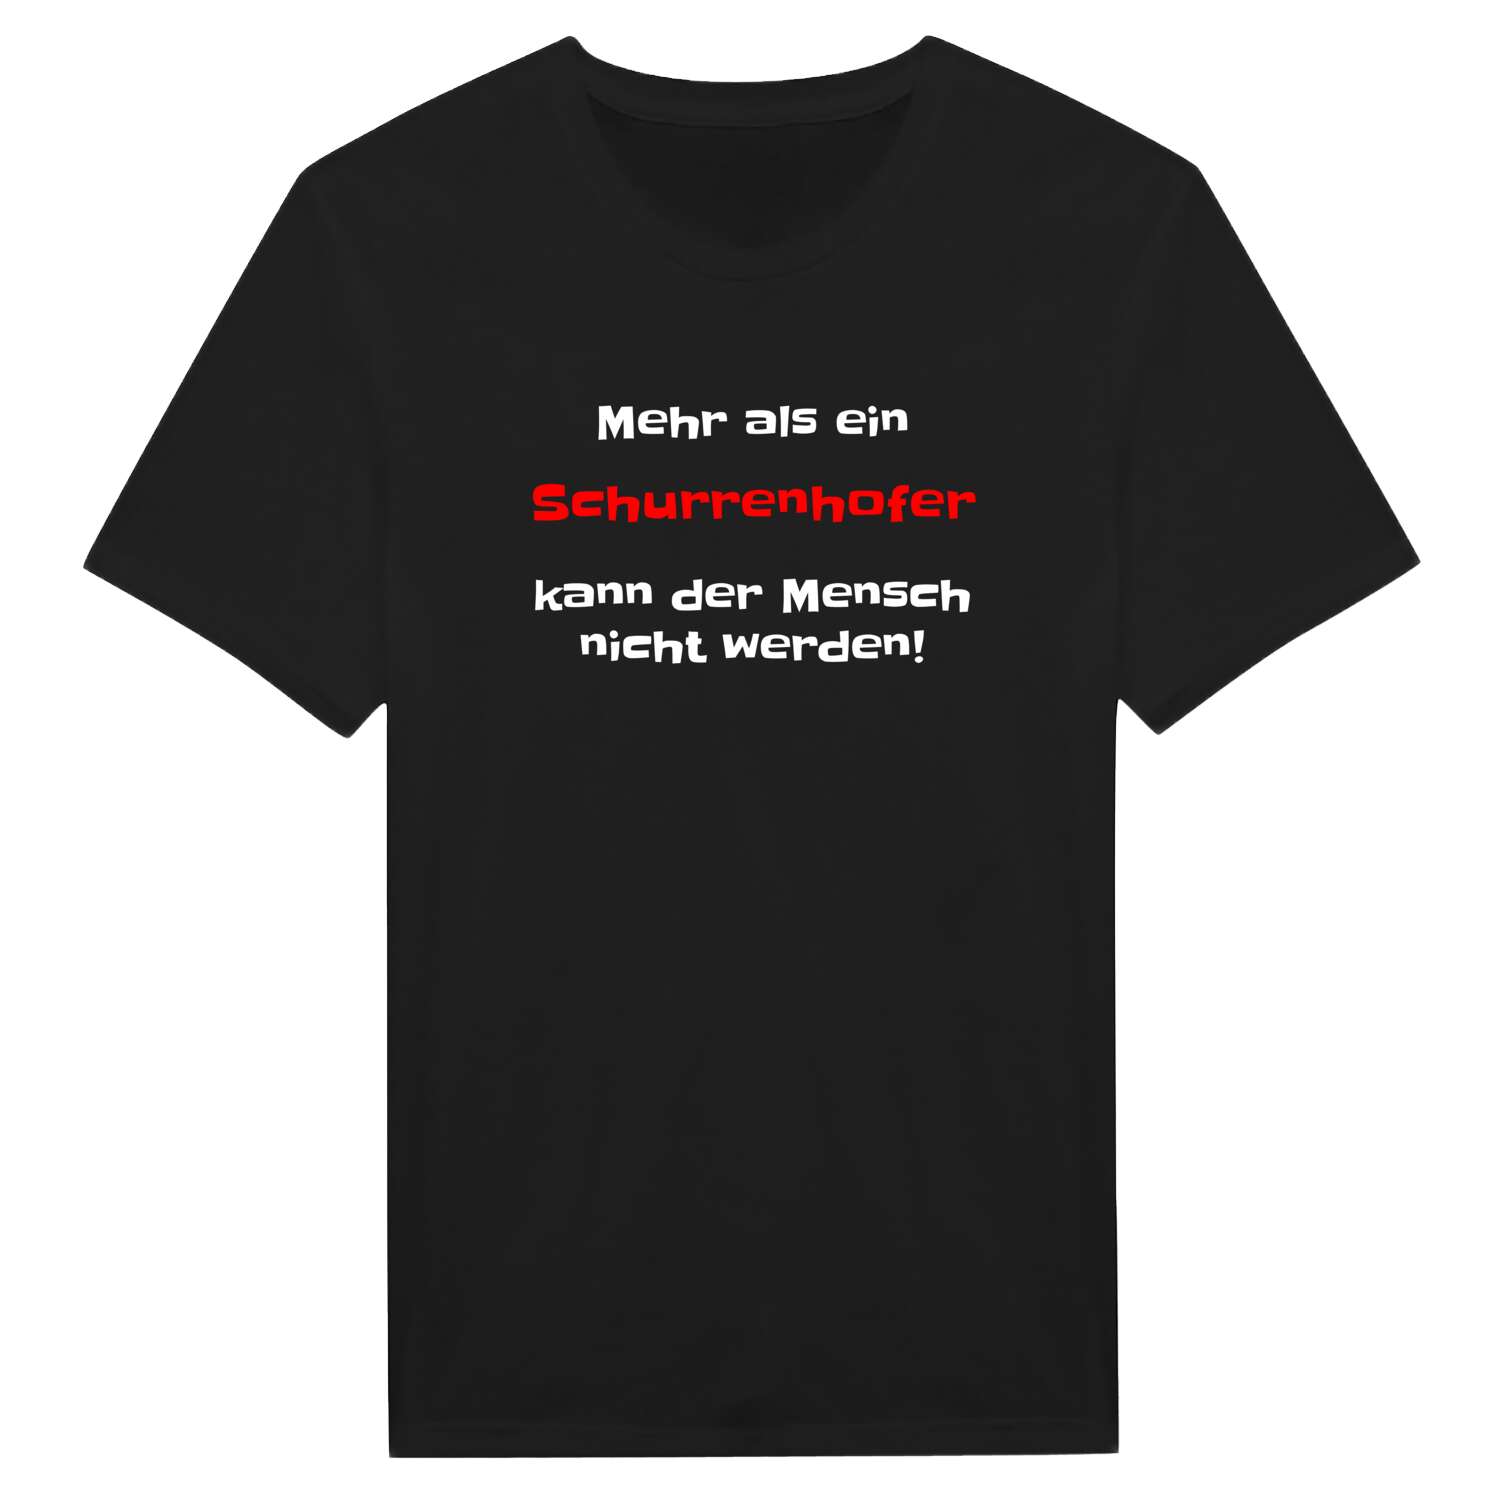 Schurrenhof T-Shirt »Mehr als ein«